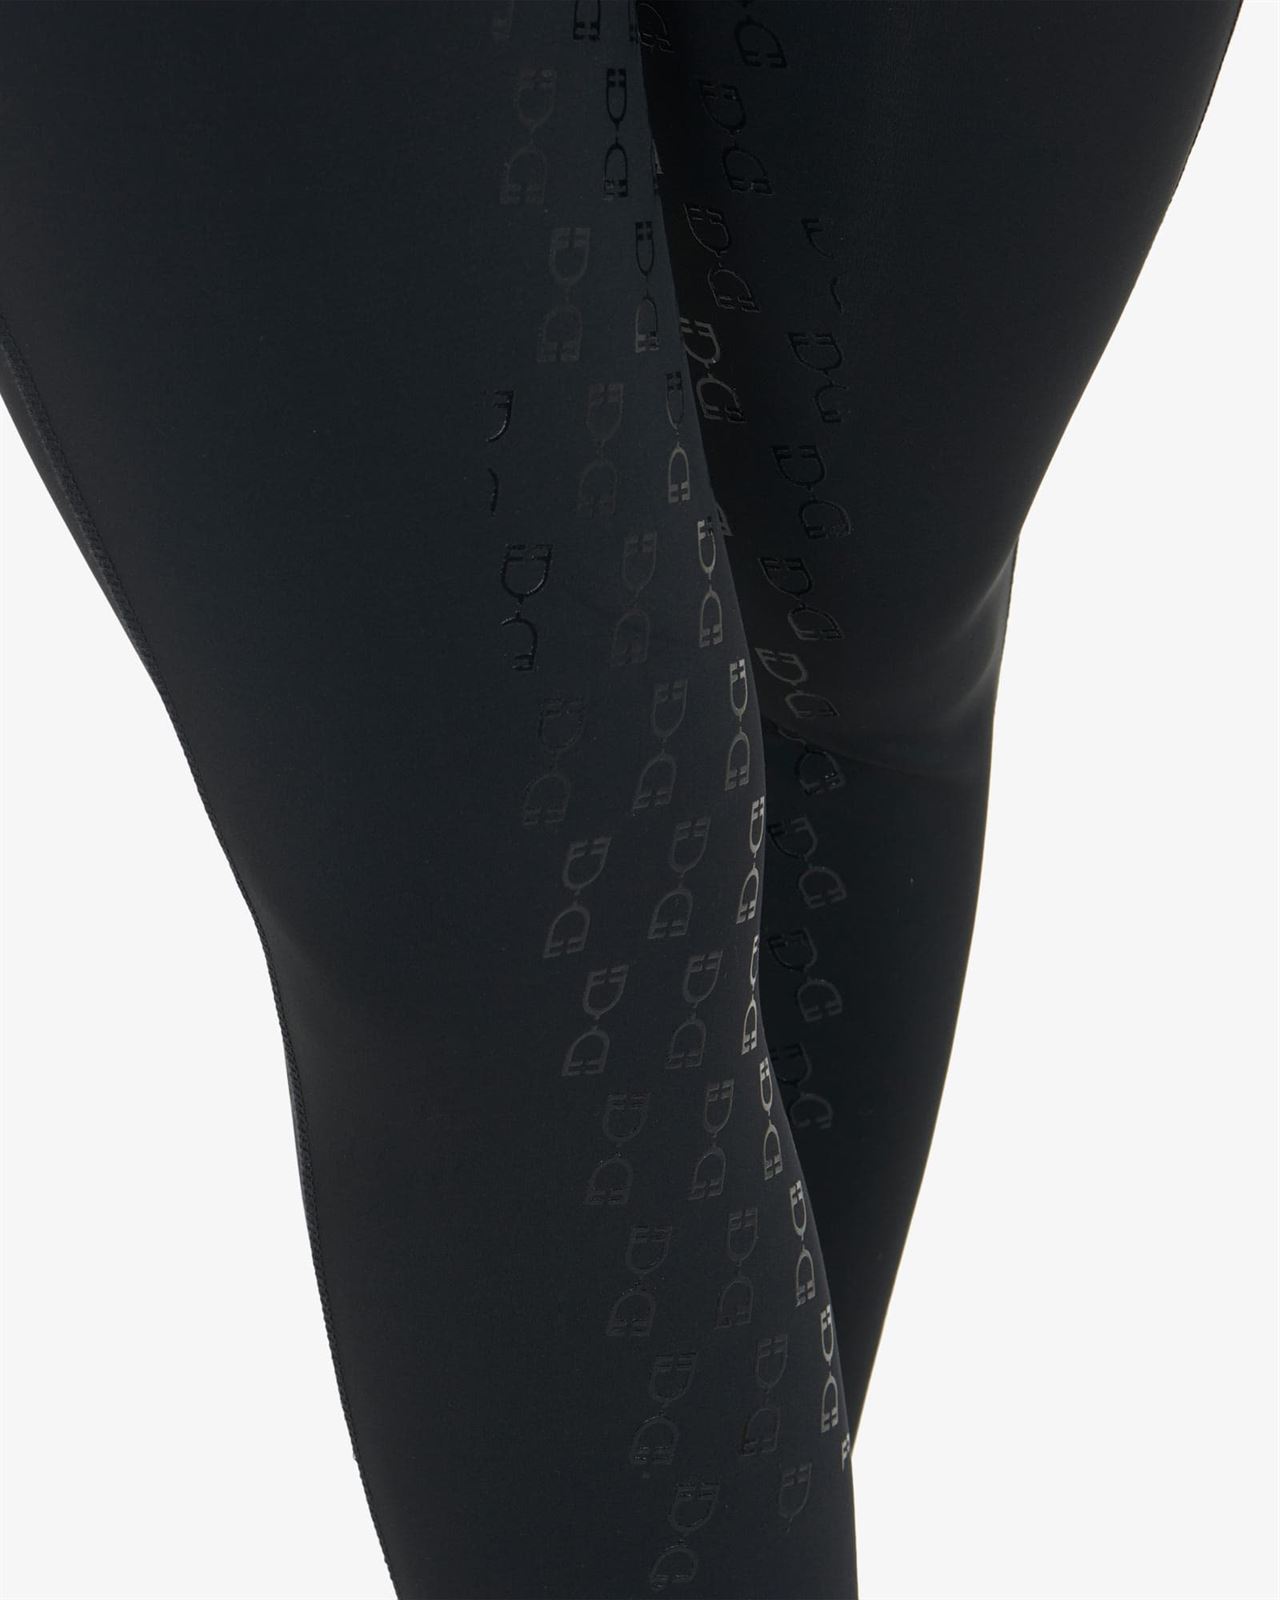 Legging EQUESTRO mujer, grip en culera color negro con cristales - Imagen 6